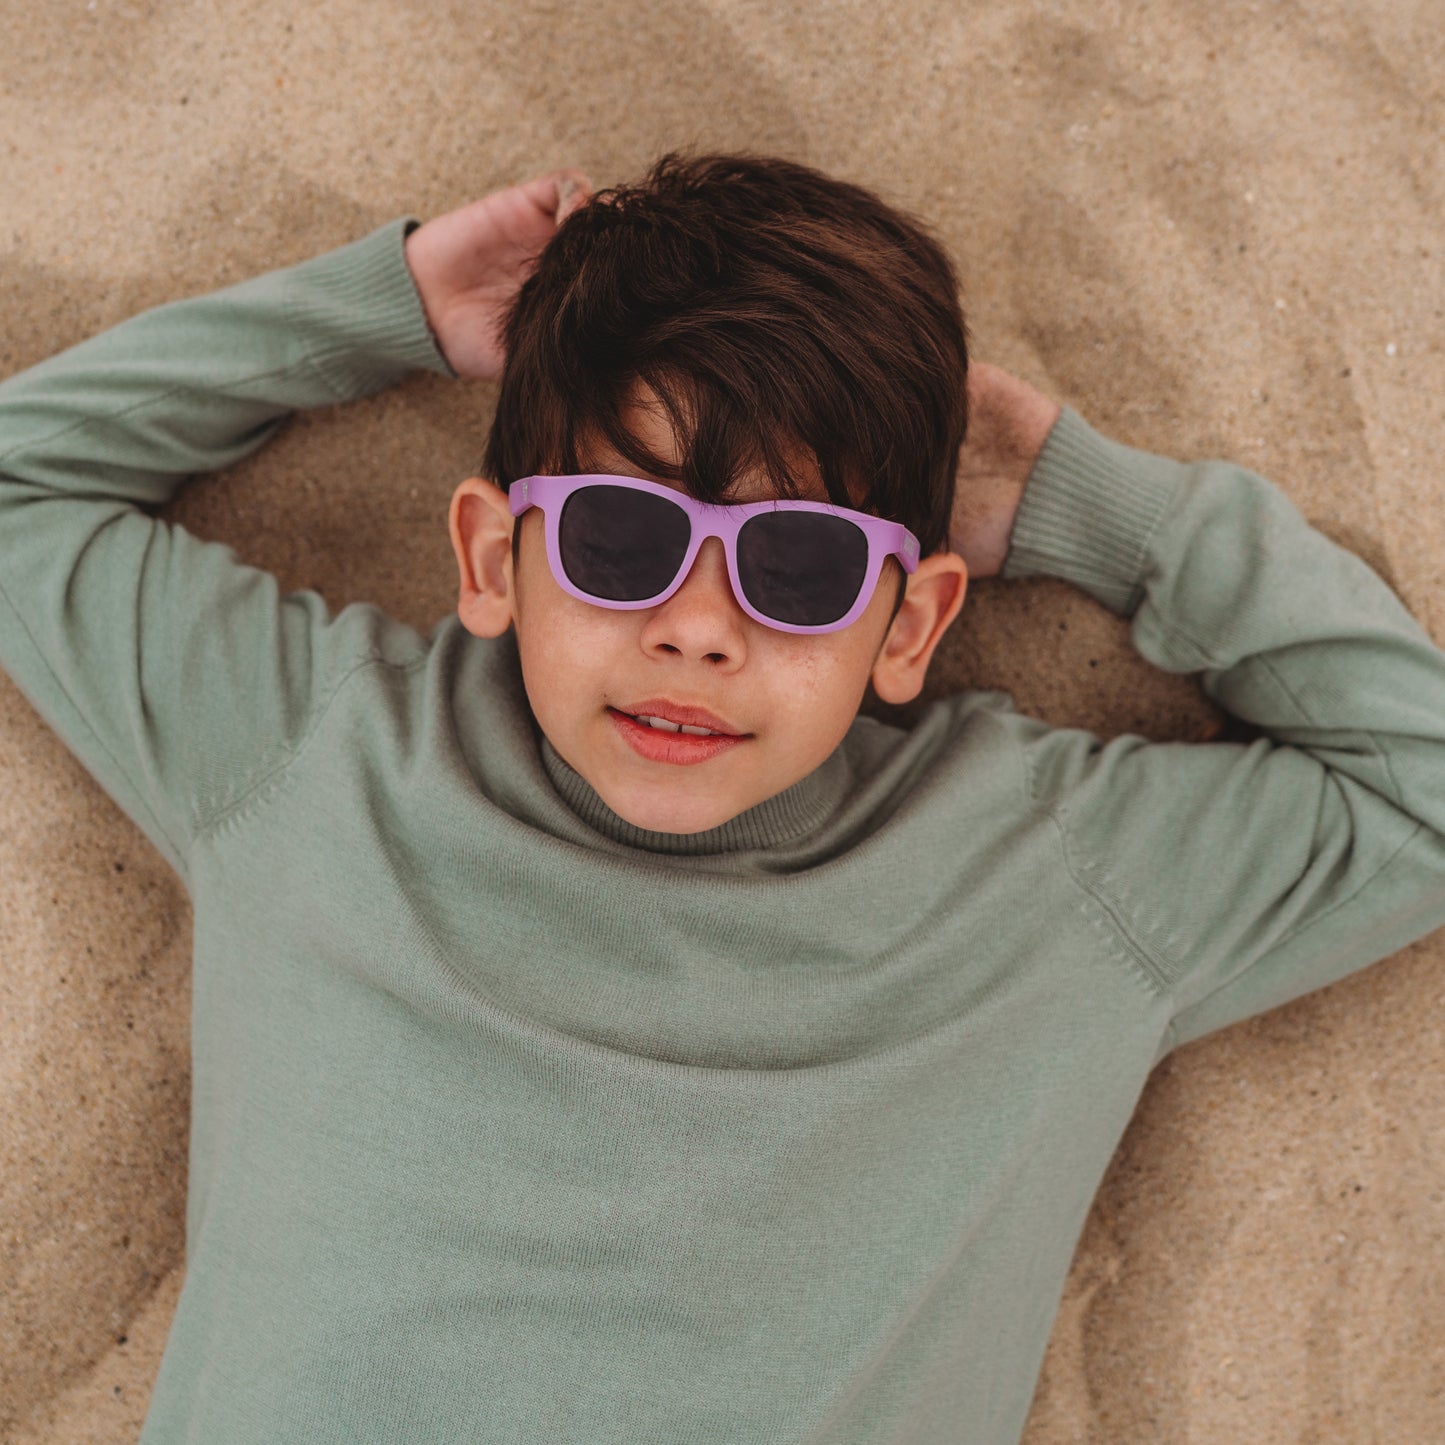 Core Non-Polarized Navigator Sunglasses | A Little Lilac